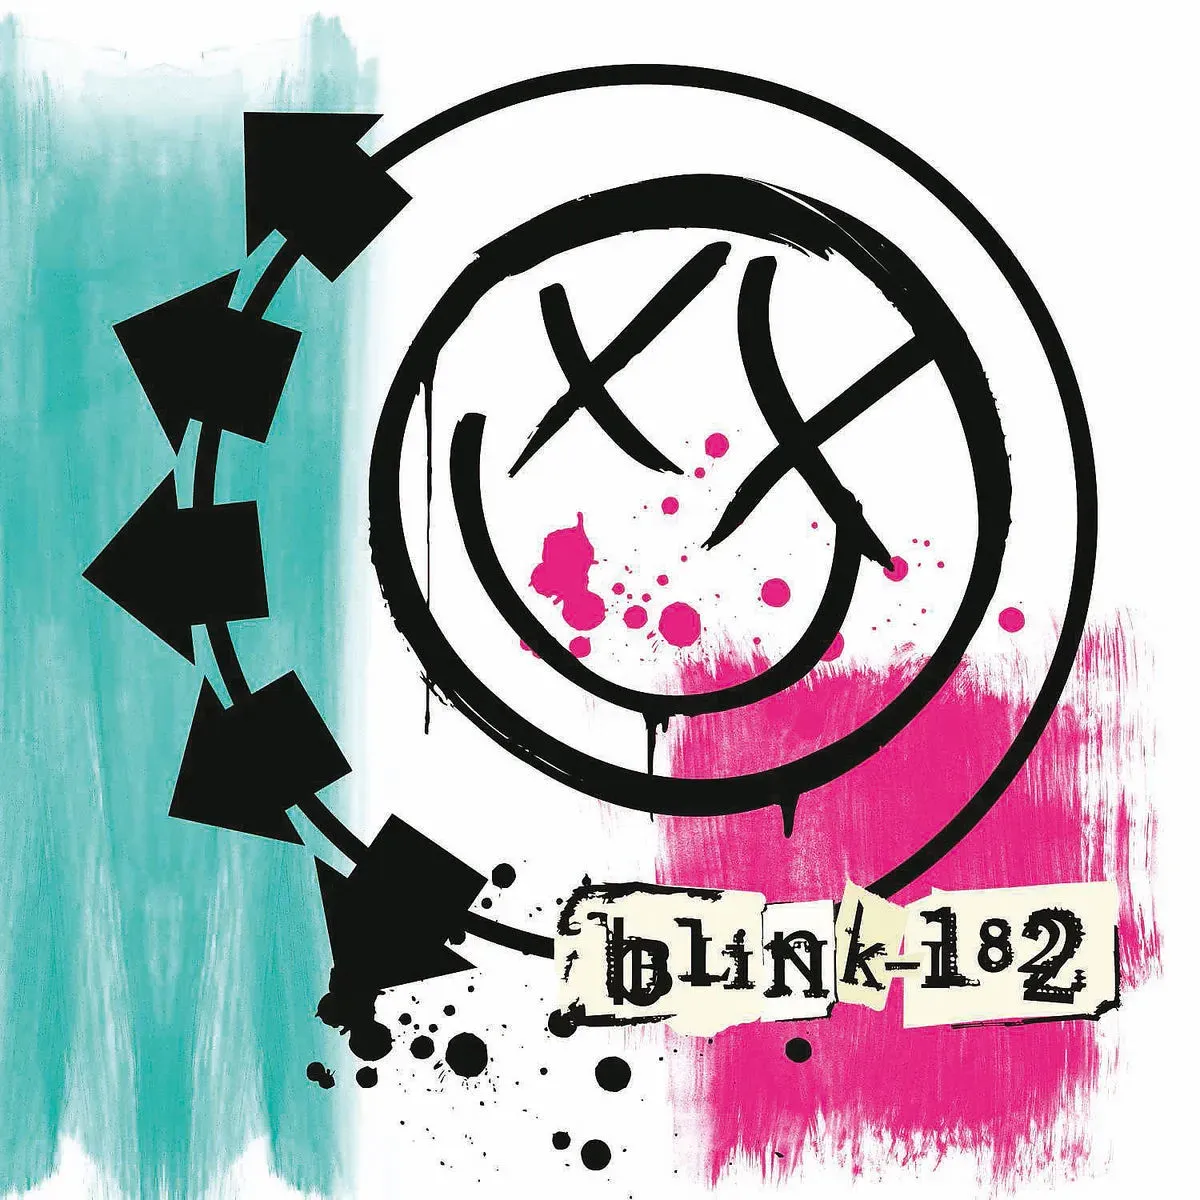 Blink-182 (Vinyl) - Blink-182. (LP)